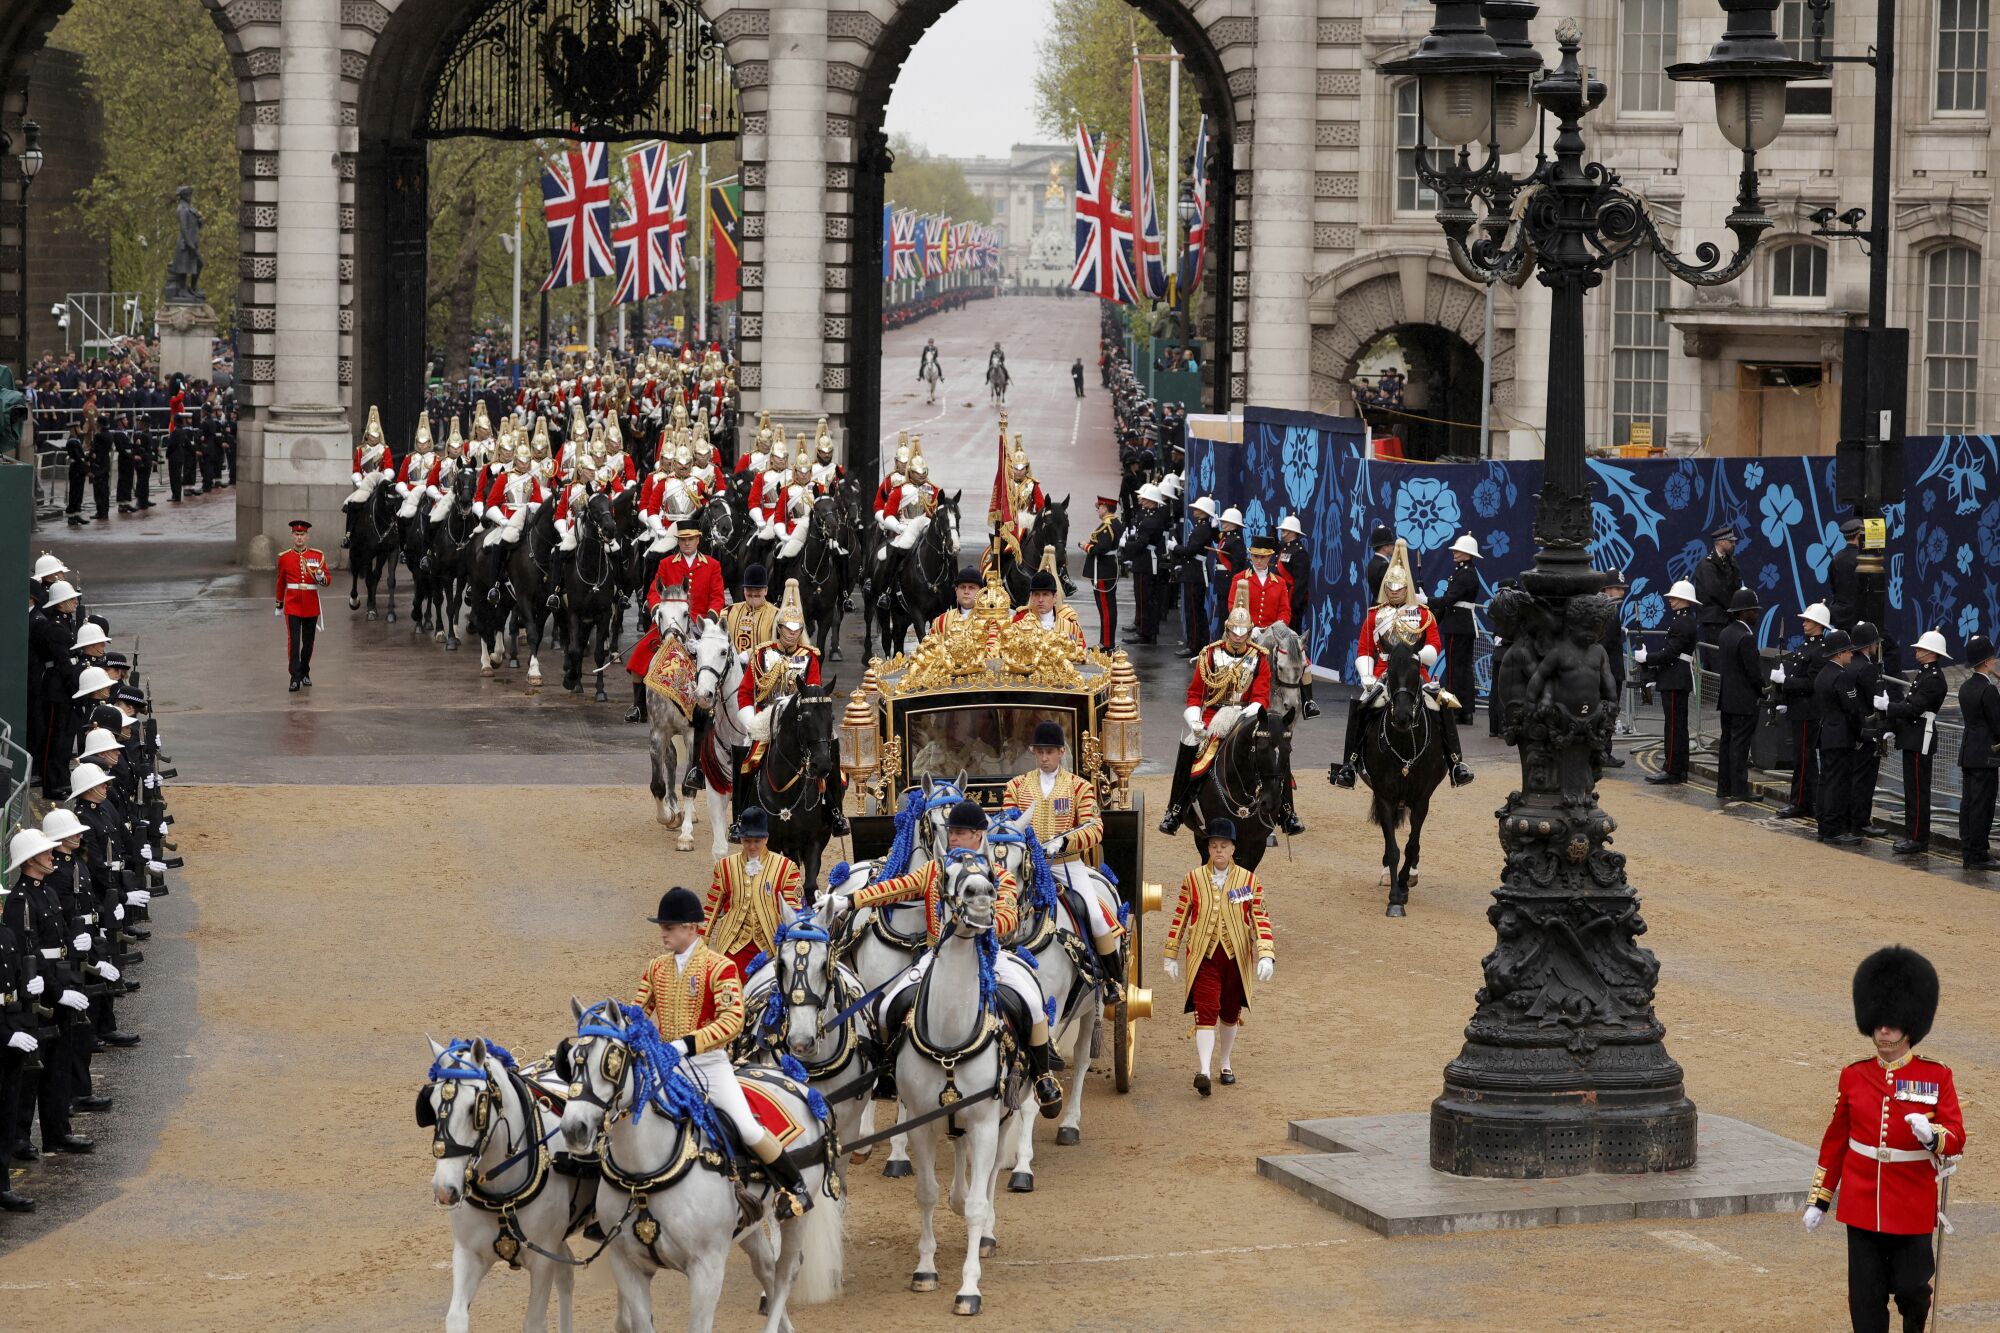 İngiltere Kralı III. Charles ve Camilla, Kraliçe Eş, Londra'daki taç giyme töreni için Westminster Abbey'e gitti